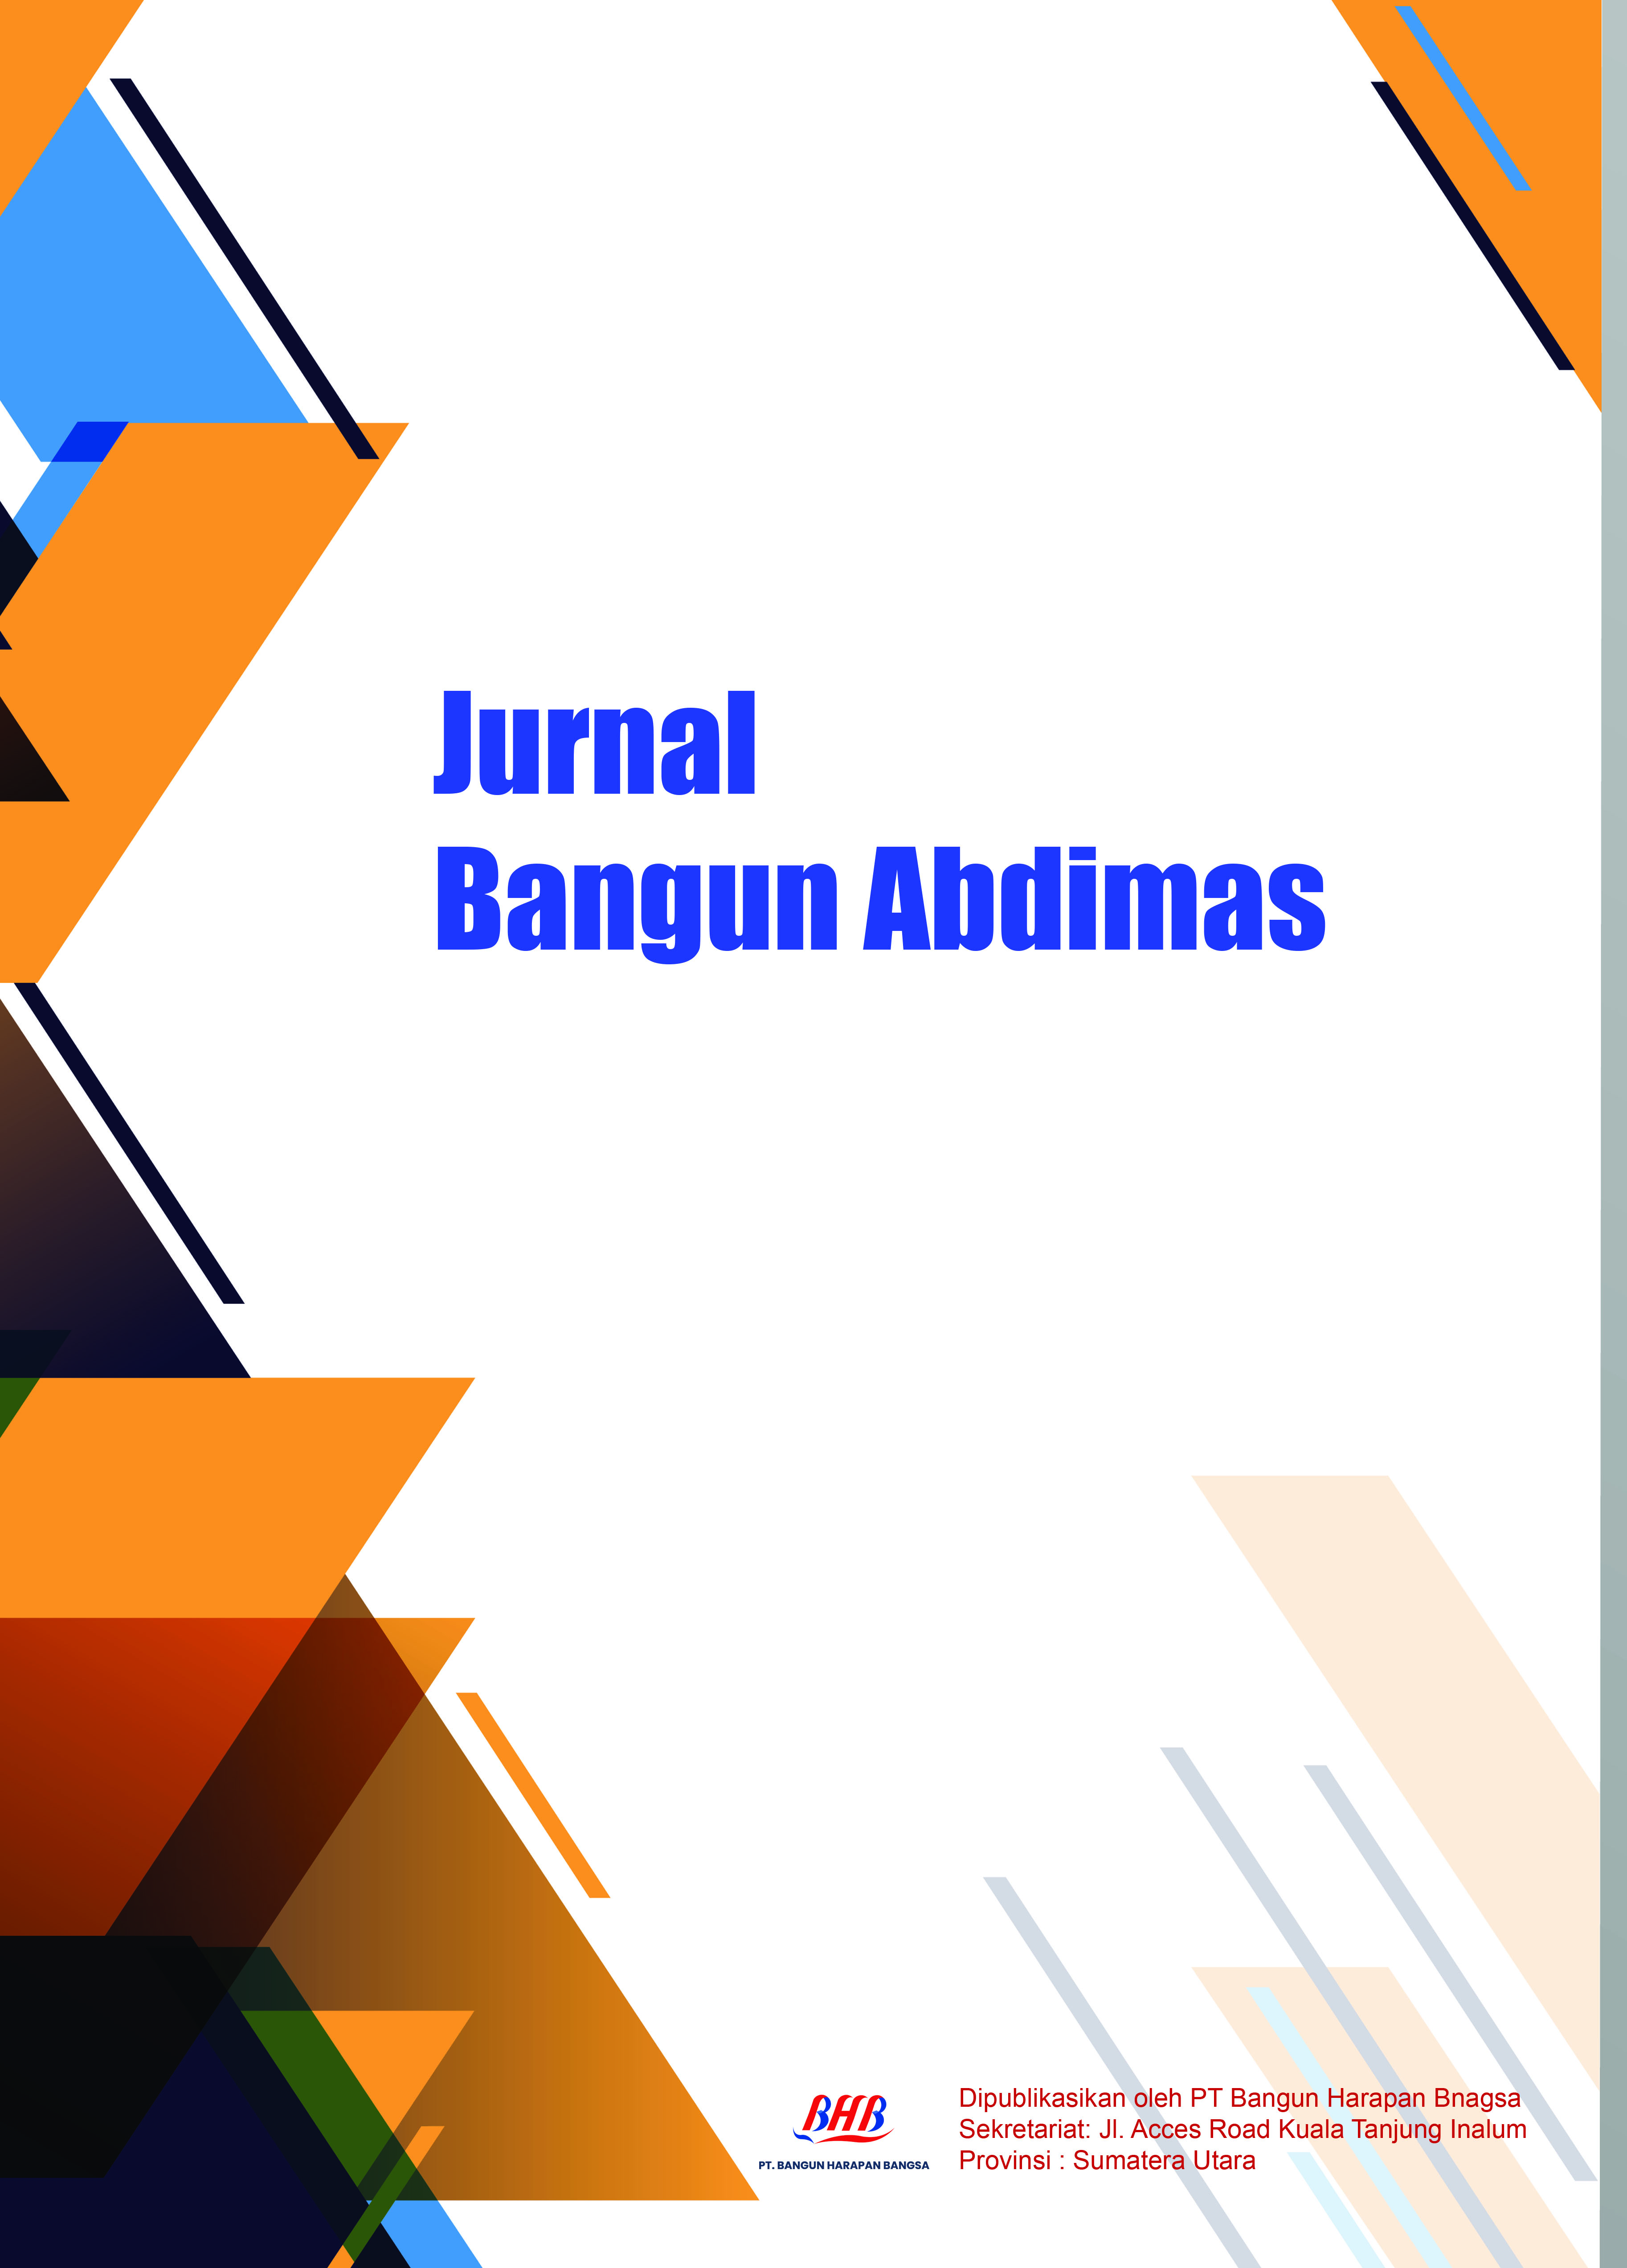 Jurnal Bangun Abdimas